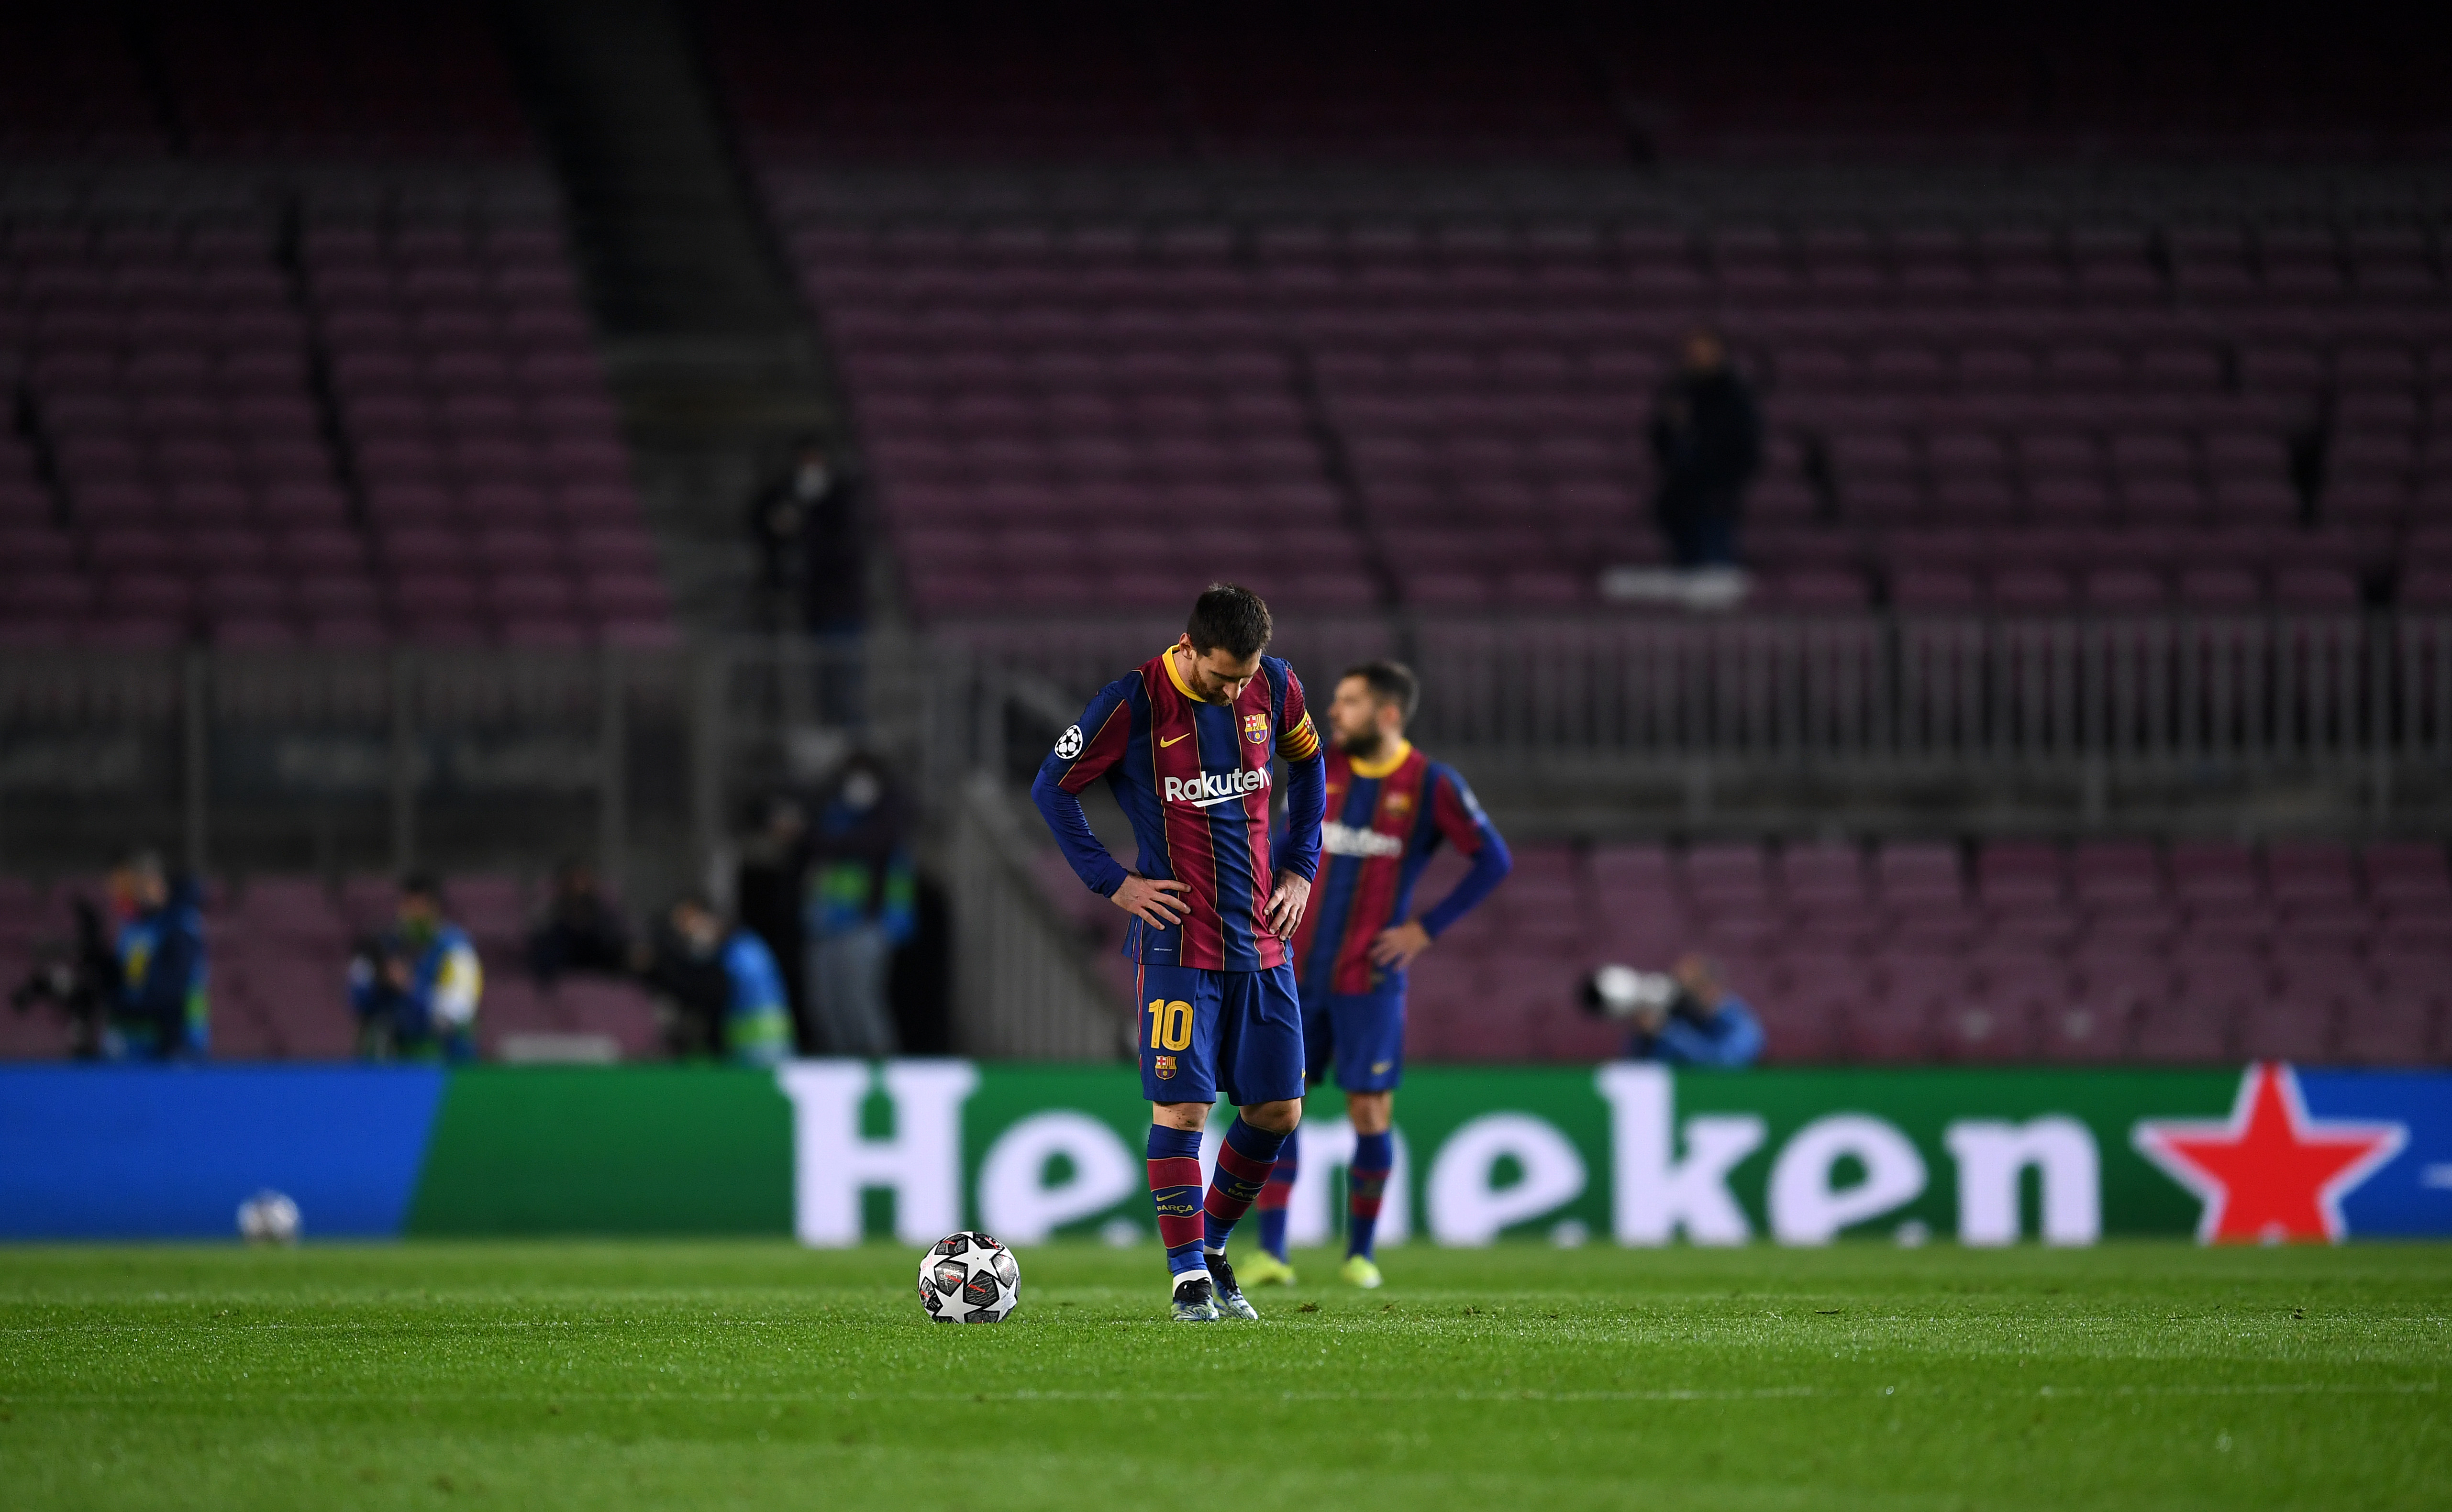 Imaginile umilinței pentru Messi și mesajul răspicat venit din Argentina, imediat după meci: ”Am ieșit de aici, ce minune!”